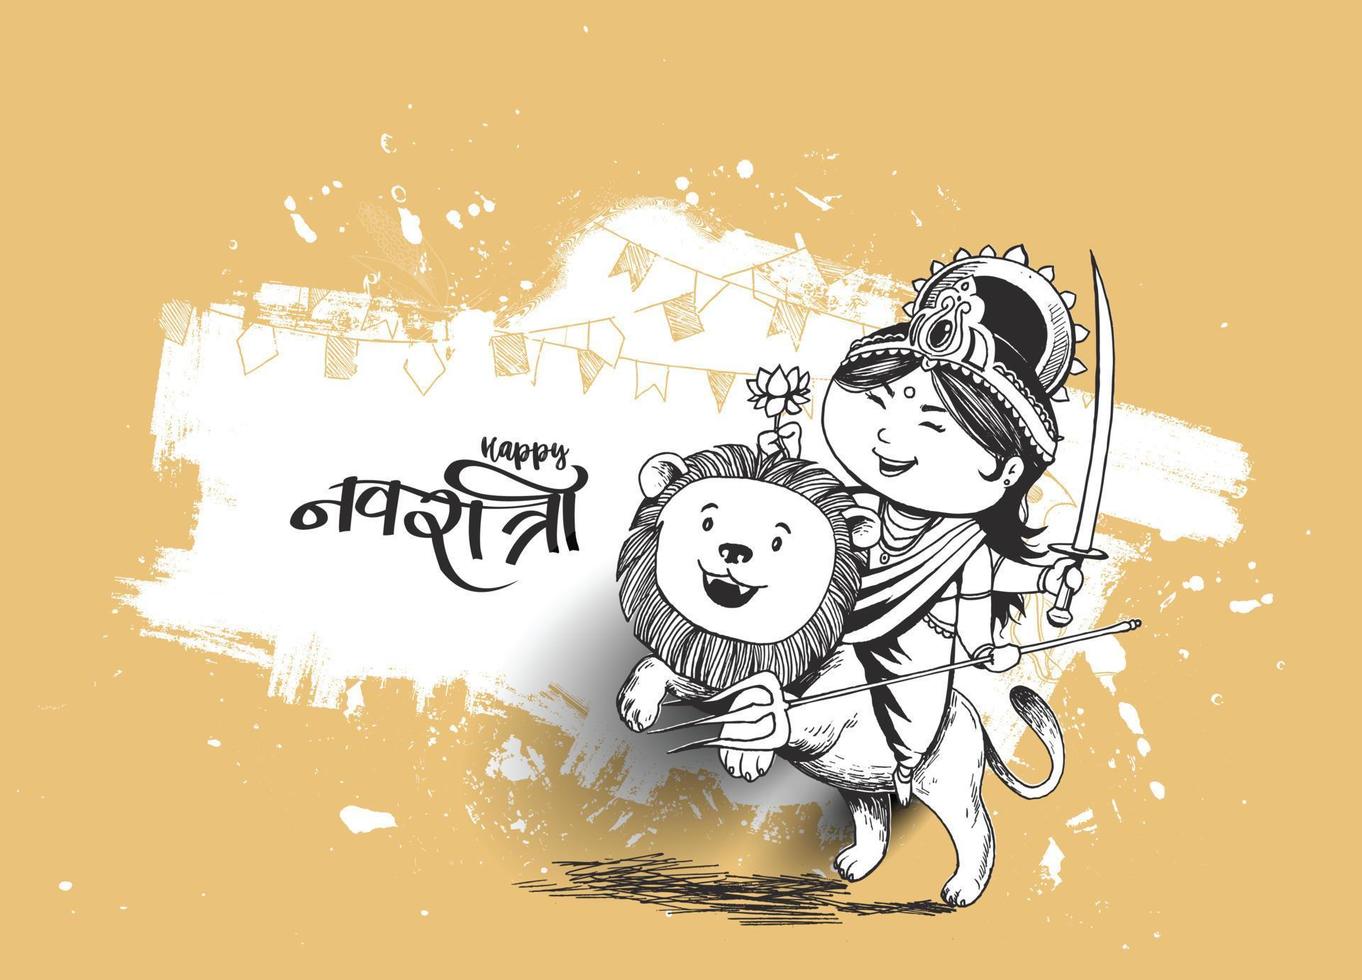 felice durga puja subh navratri festival india vacanza sfondo, disegnato a mano cartone animato schizzo illustrazione vettoriale. vettore